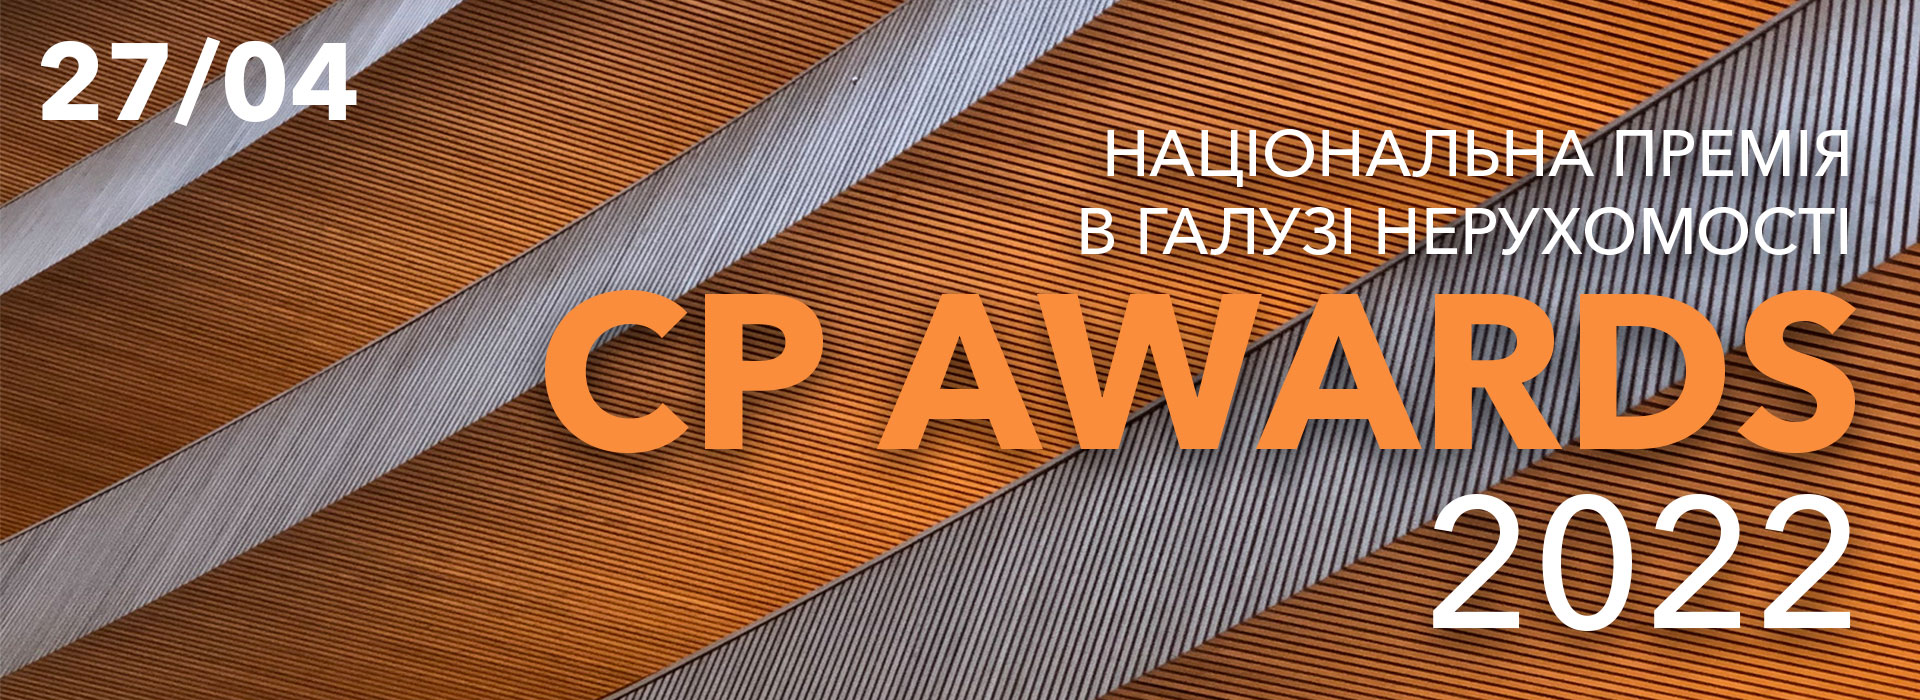 CP Awards 2022